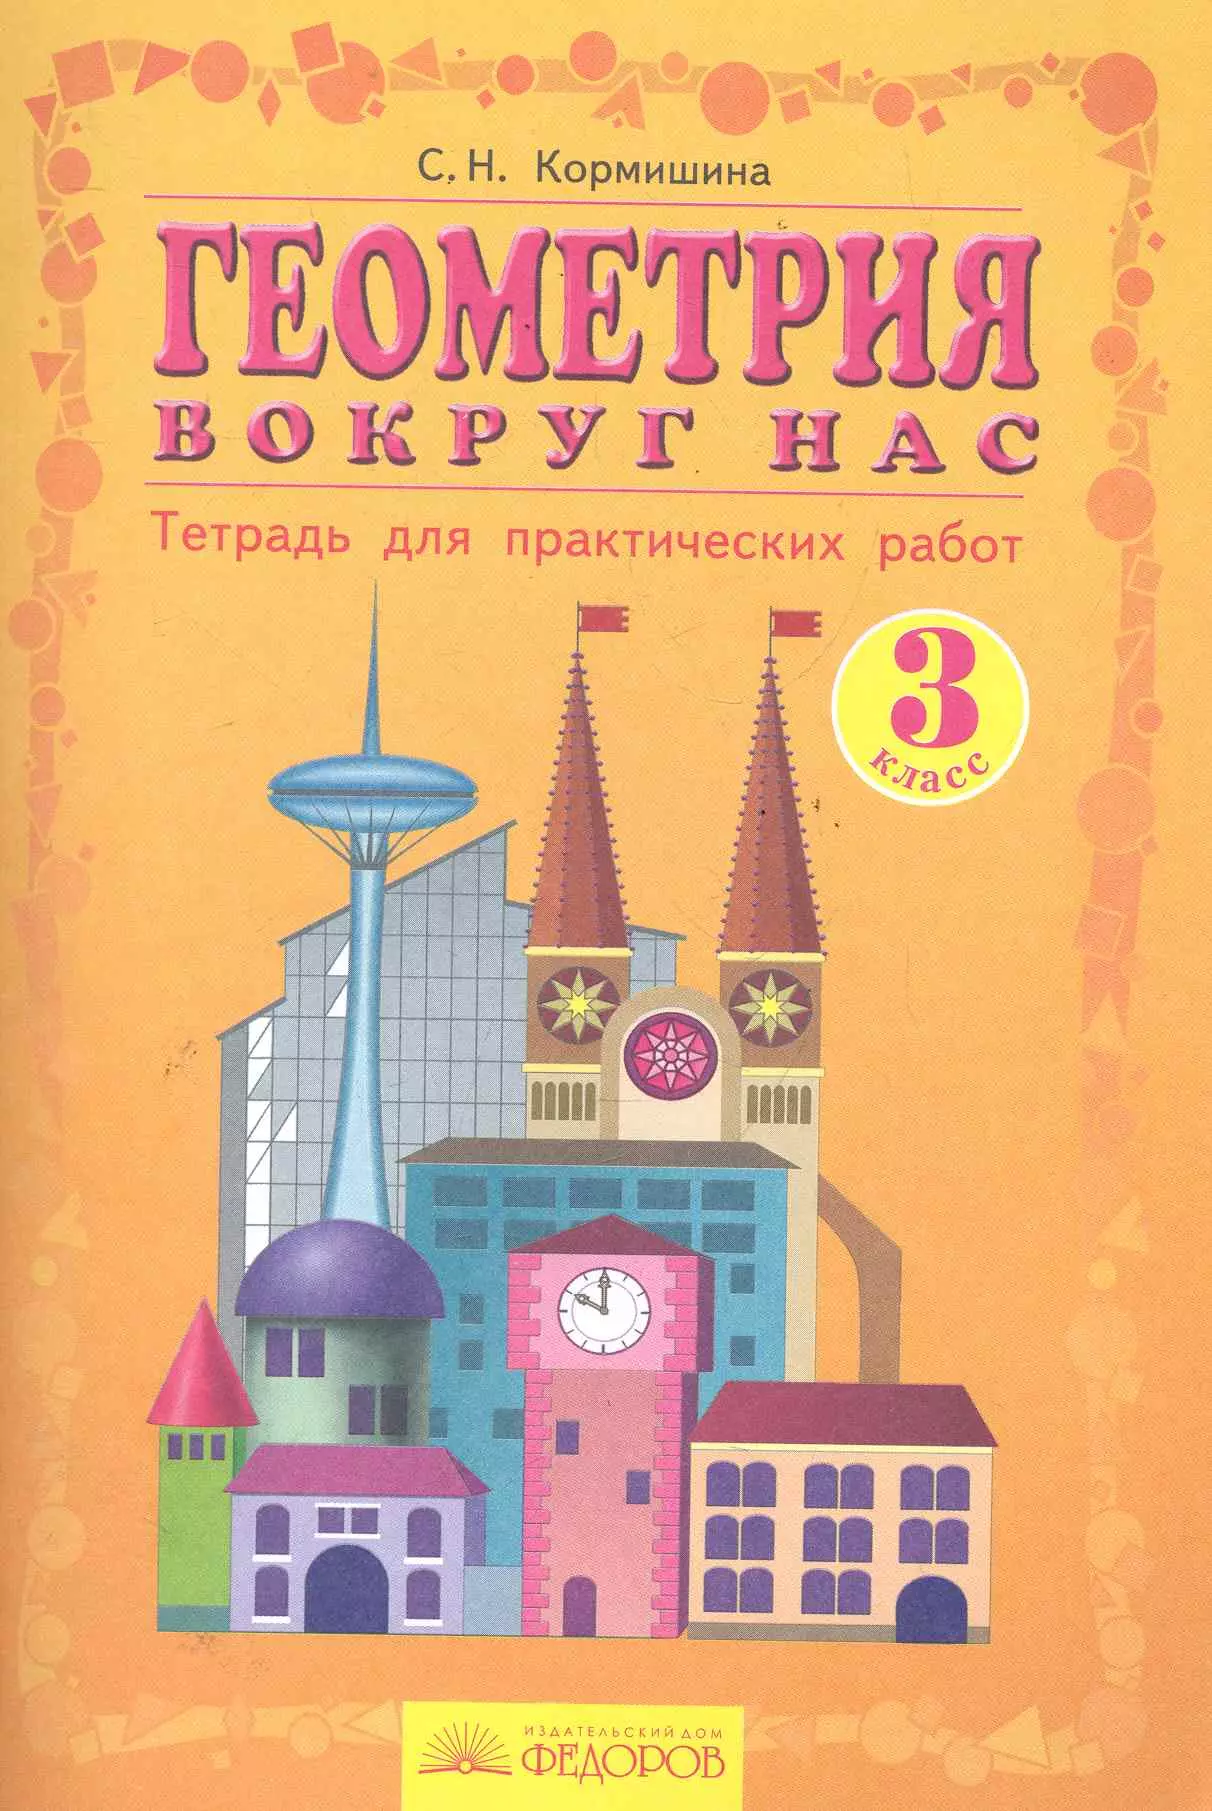 Кормишина Светлана Николаевна - Геометрия вокруг нас: Тетрадь для практических работ. 3 класс / 7-е изд.